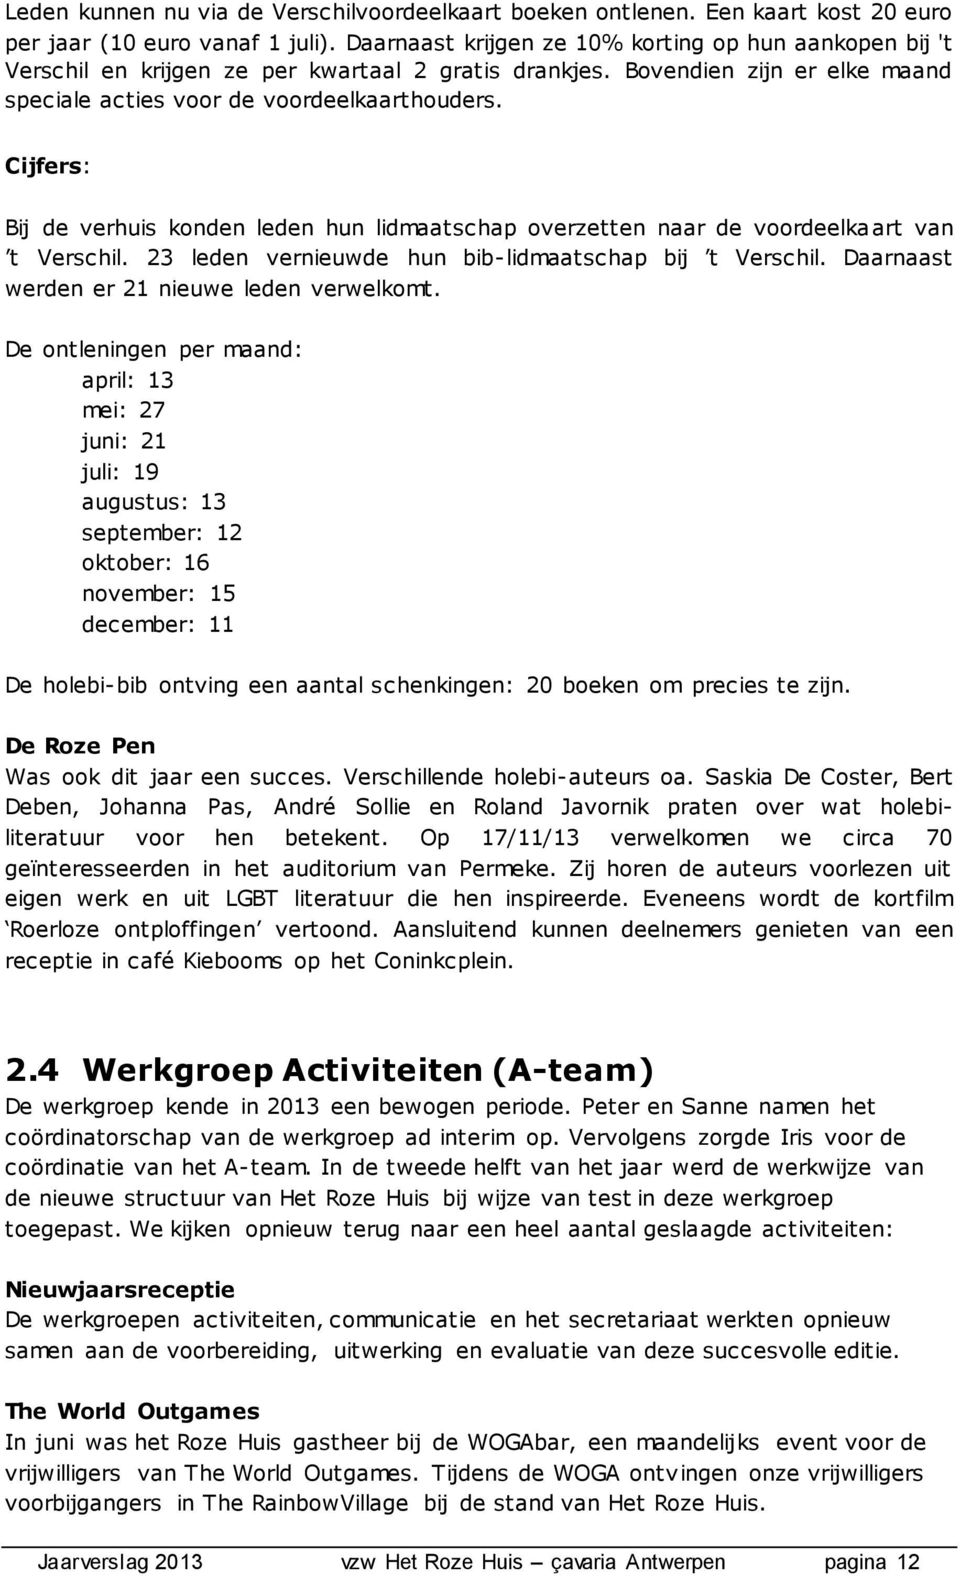 Cijfers: Bij de verhuis konden leden hun lidmaatschap overzetten naar de voordeelkaart van t Verschil. 23 leden vernieuwde hun bib-lidmaatschap bij t Verschil.